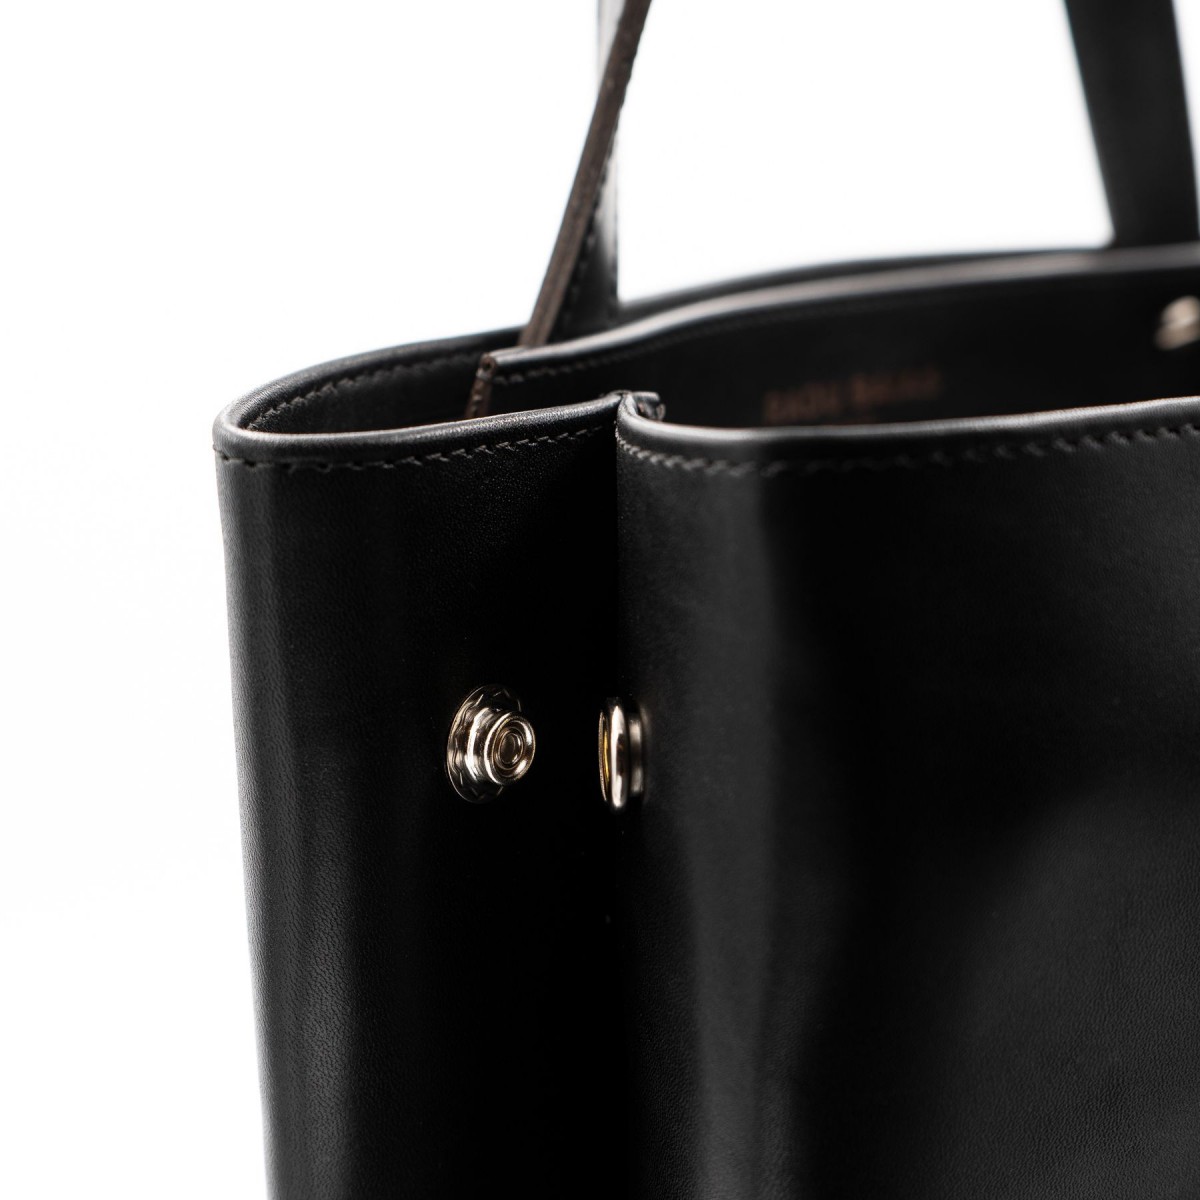 Shopper schwarz – aus premium pflanzlich gegerbtem Leder